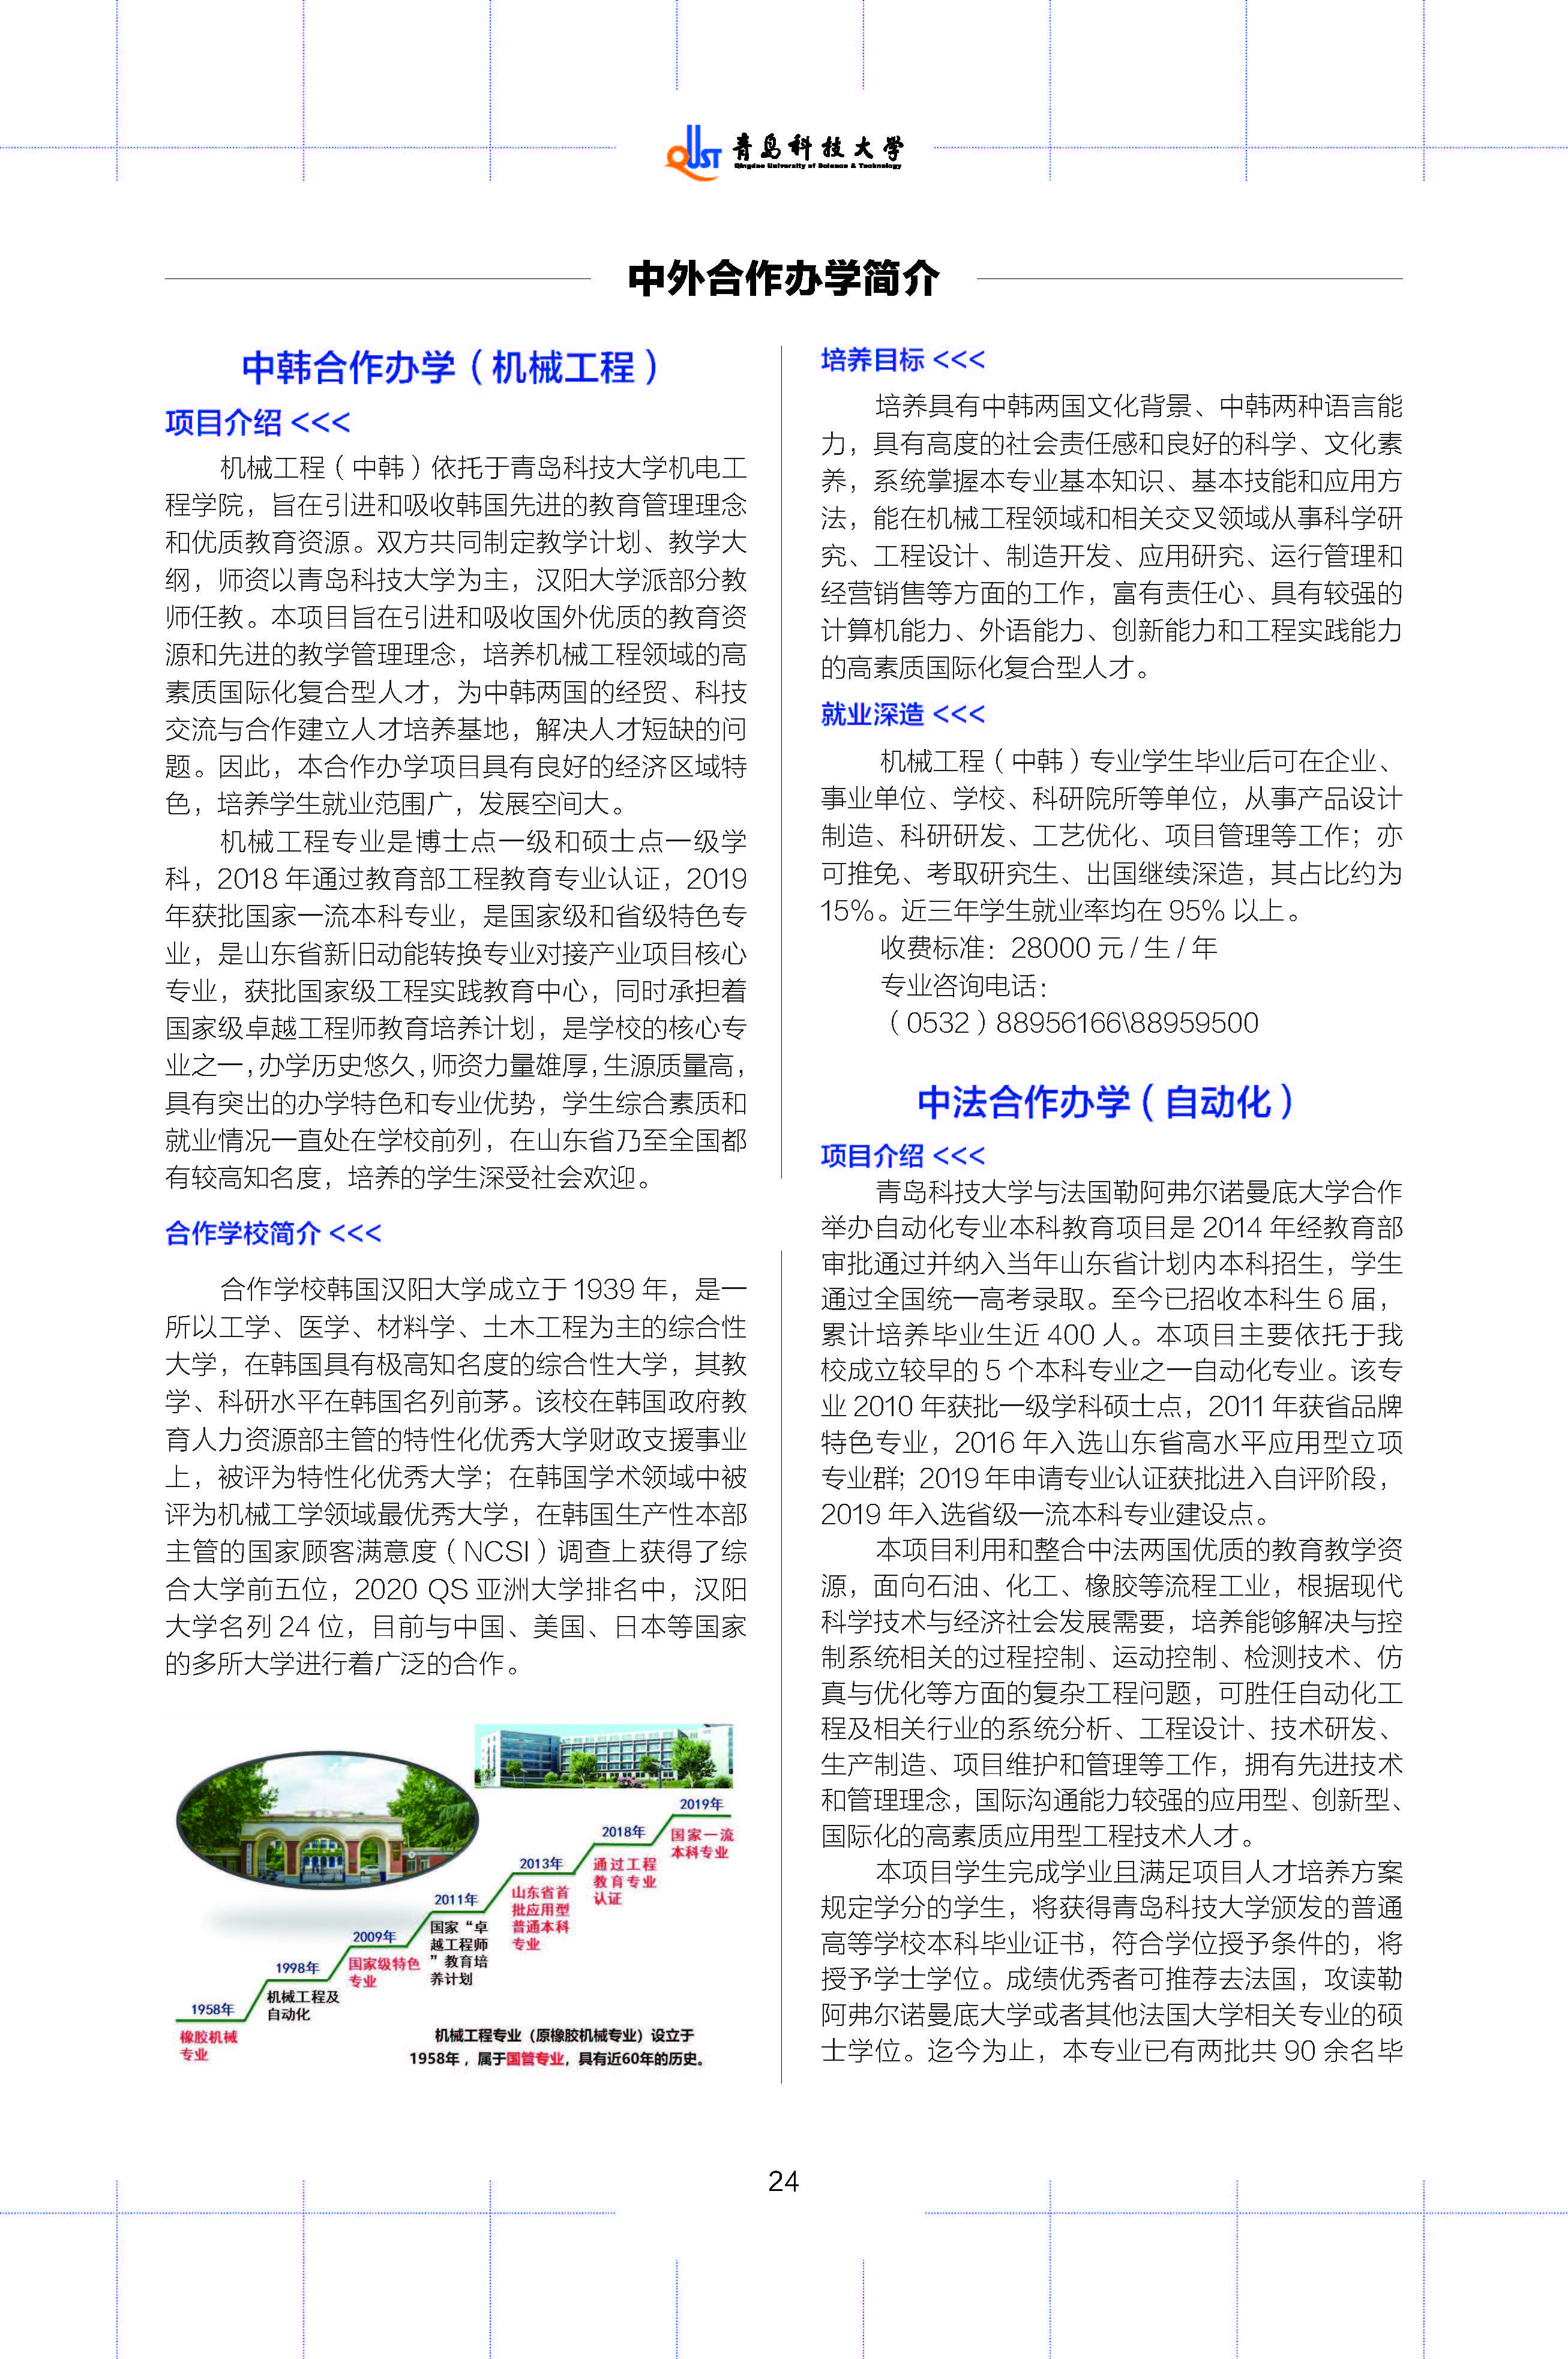 青岛科技大学2020年报考指南